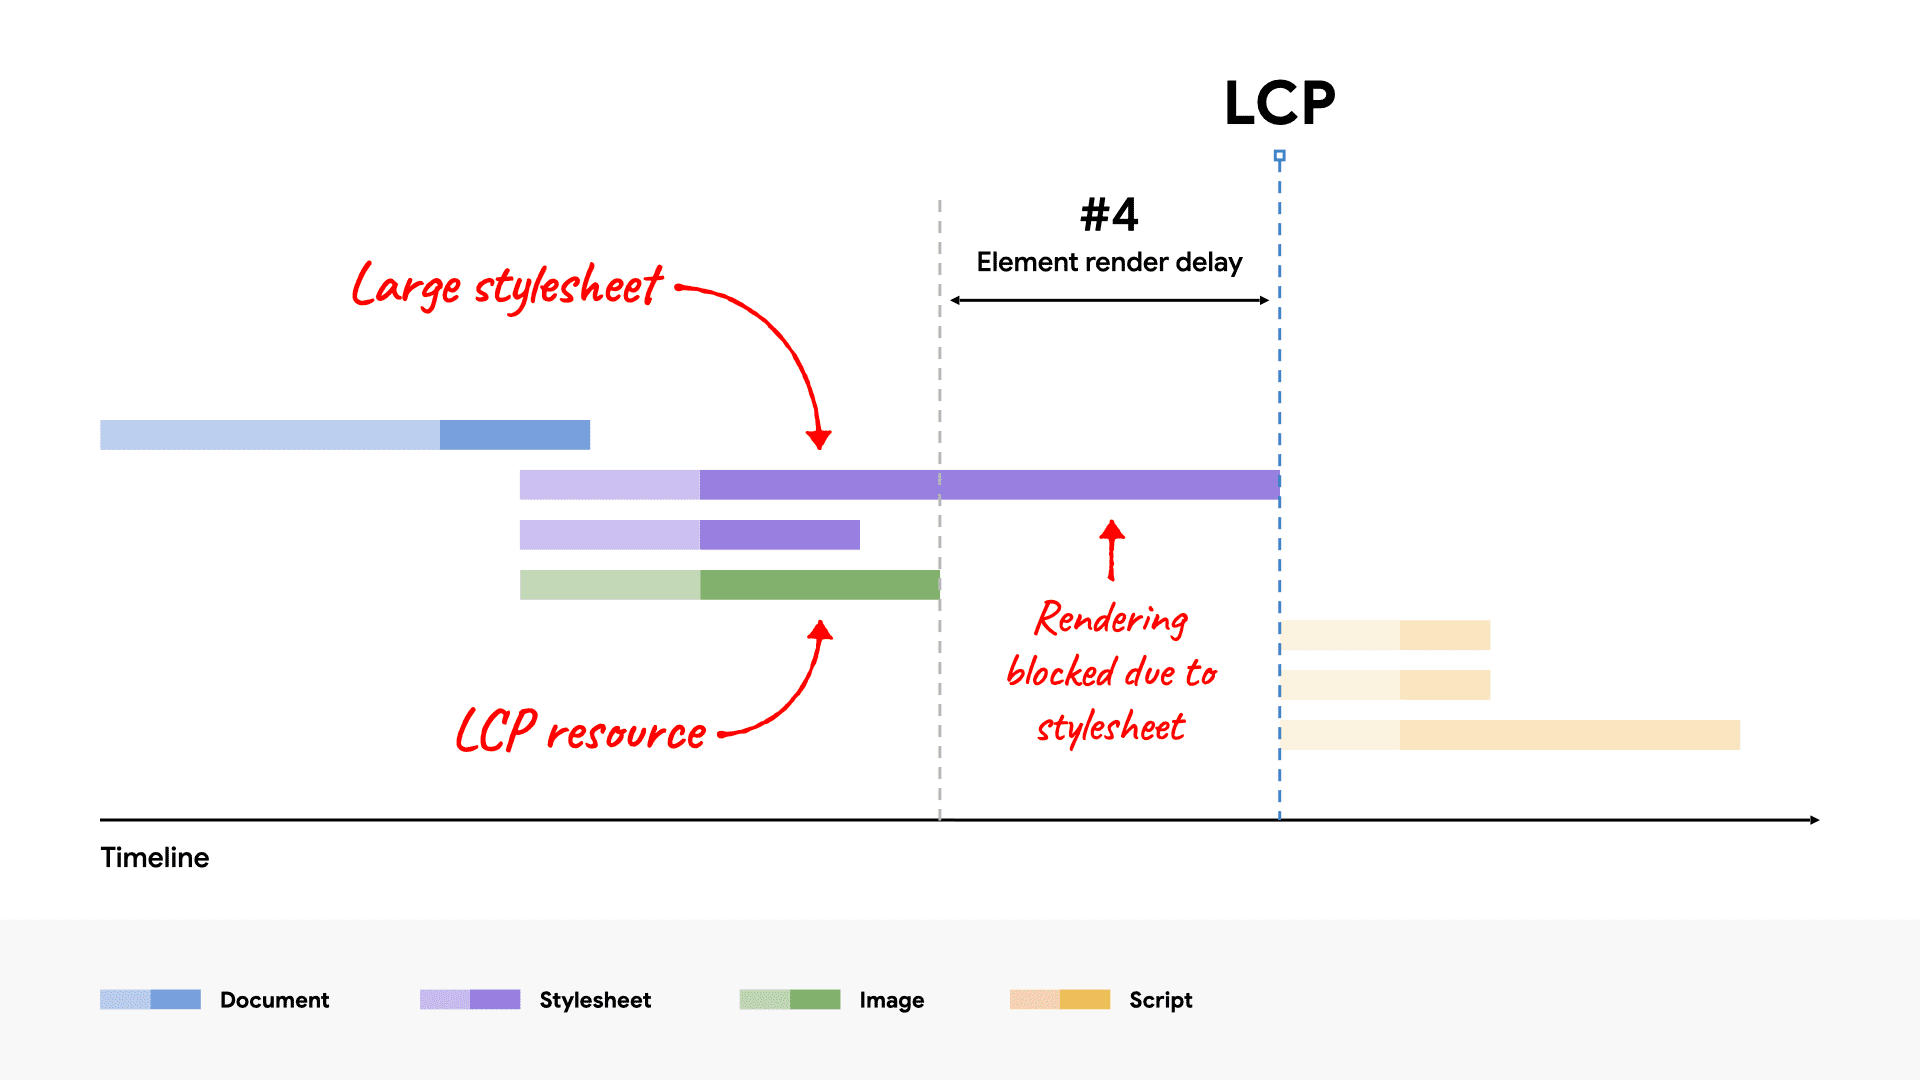 תרשים מפל מים של רשת שמציג קובץ CSS גדול שחוסם את הרינדור של רכיב ה-LCP, כי הטעינה שלו נמשכת יותר זמן מאשר משאב ה-LCP